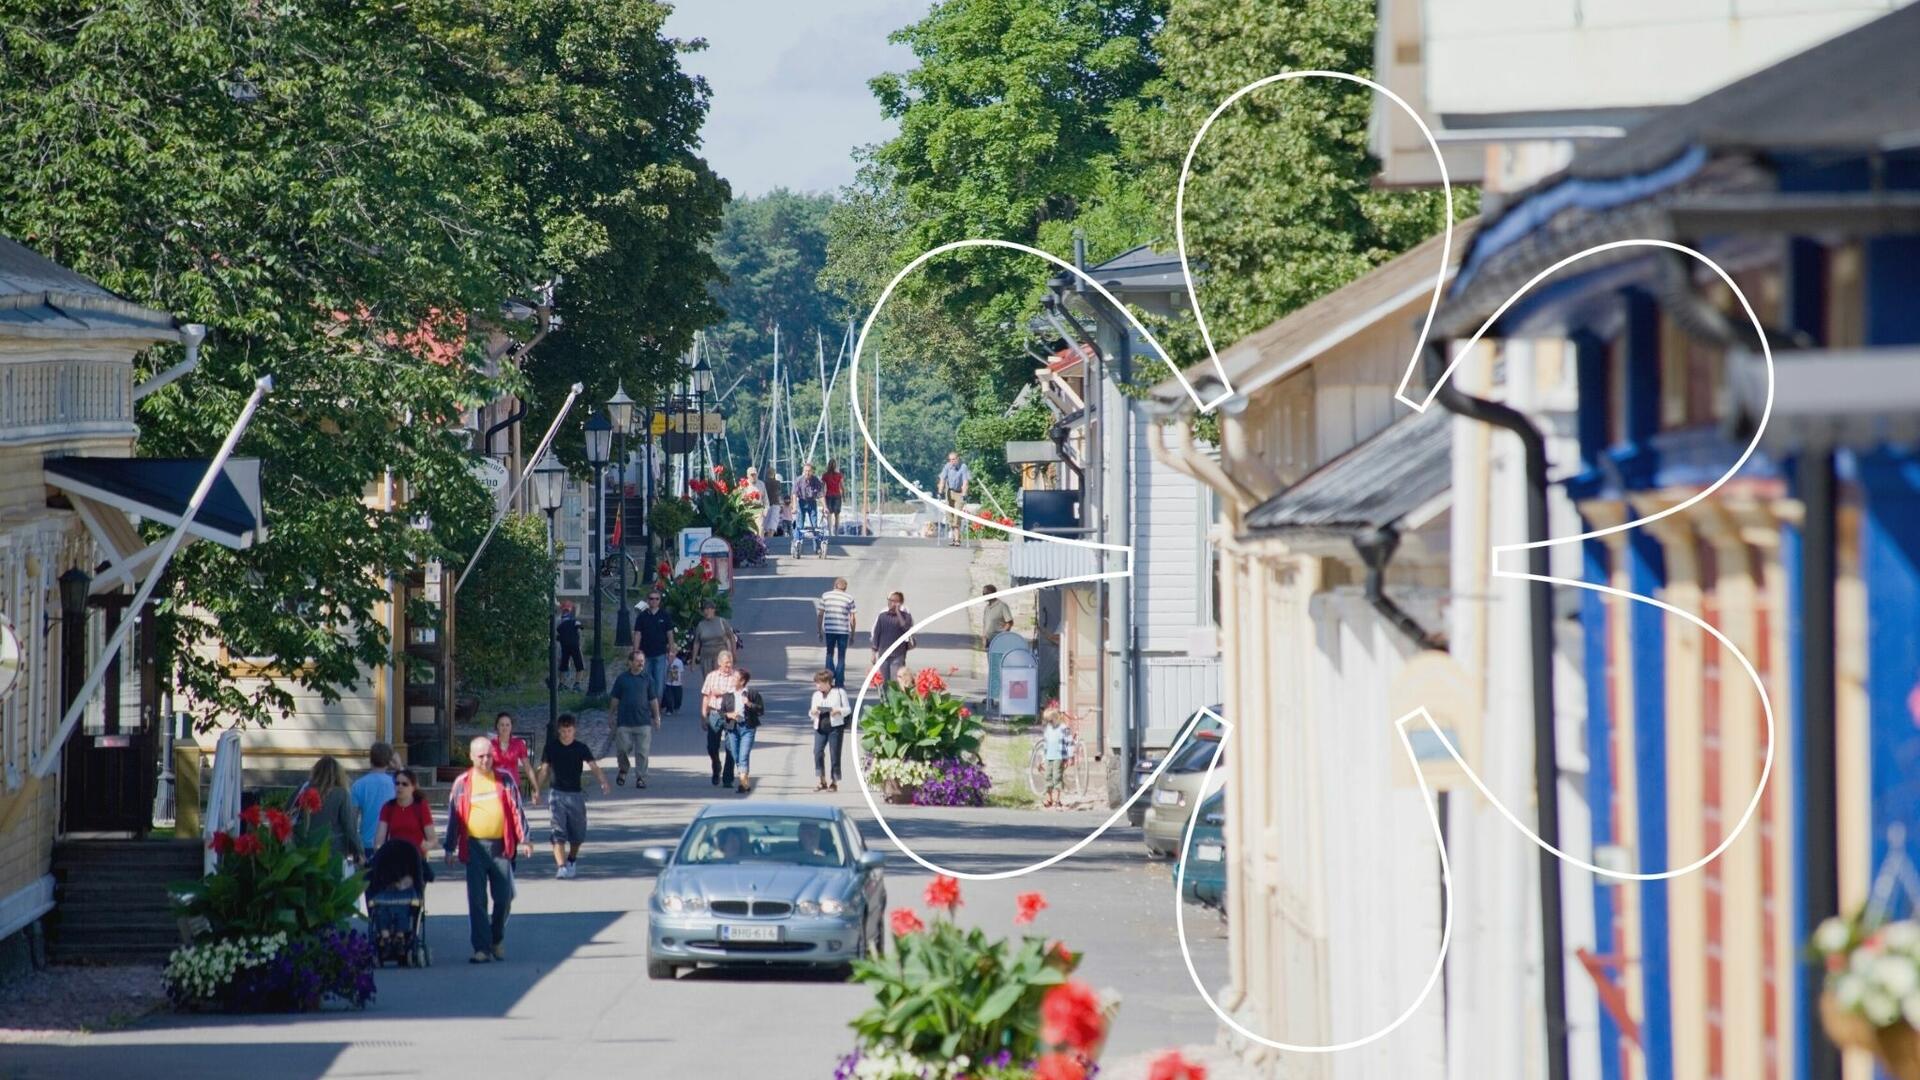 Ihmisiä kulkee puutalojen välissä Mannerheiminkatua pitkin kesäisessä Vanhassakaupungissa Naantalissa.